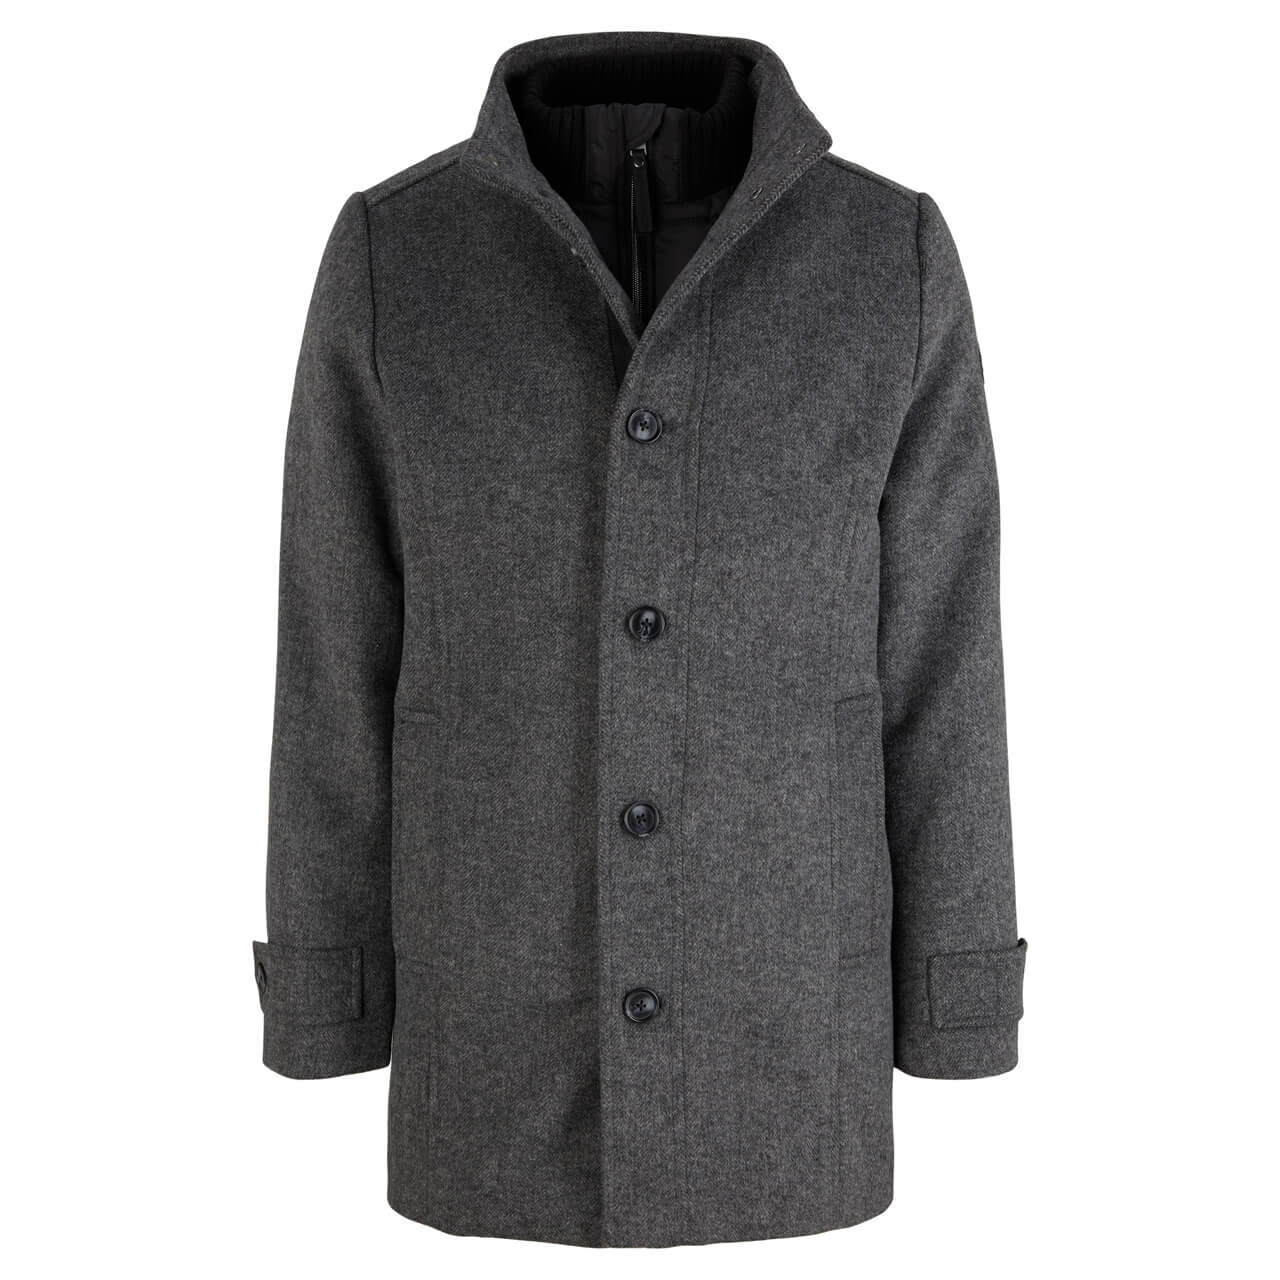 Tom Tailor Herren Mantel Wool Coat 2 in 1 dark grey black